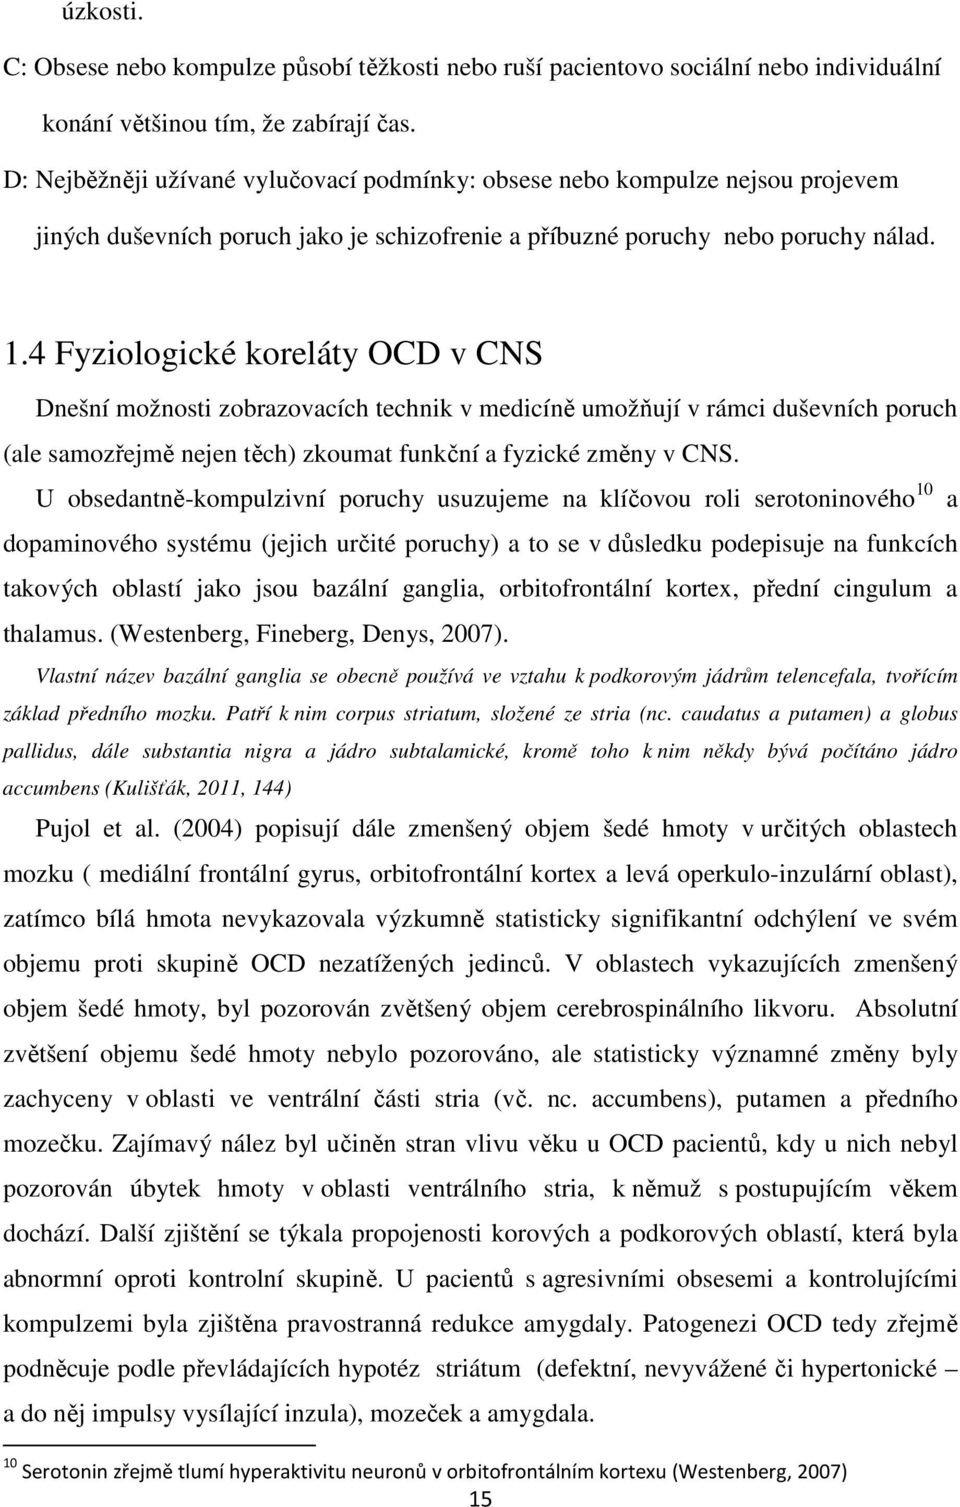 4 Fyziologické koreláty OCD v CNS Dnešní možnosti zobrazovacích technik v medicíně umožňují v rámci duševních poruch (ale samozřejmě nejen těch) zkoumat funkční a fyzické změny v CNS.